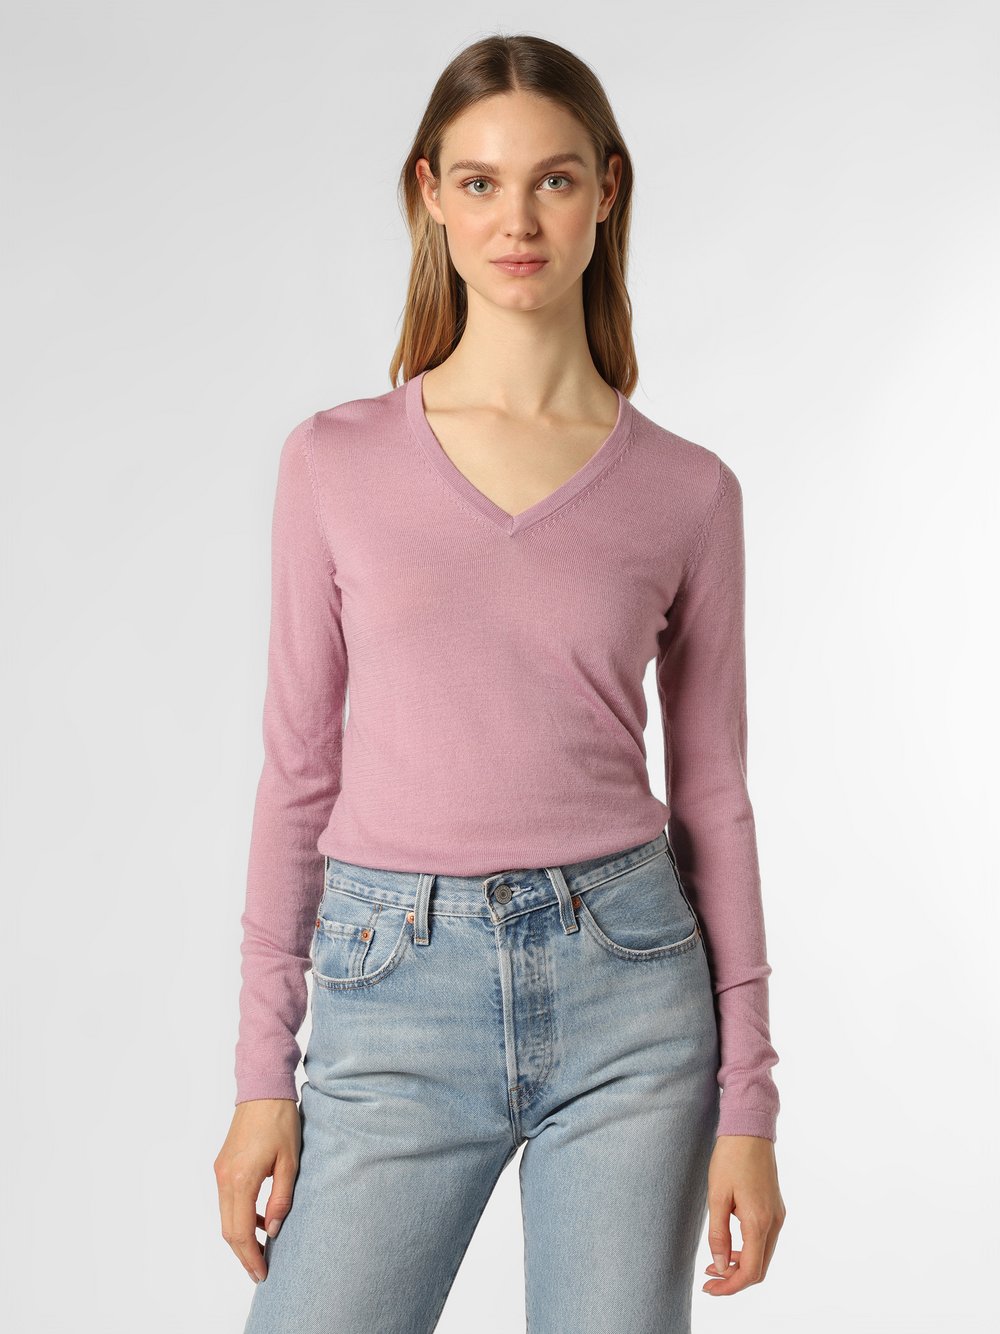 Brookshire - Damski sweter z wełny merino, różowy